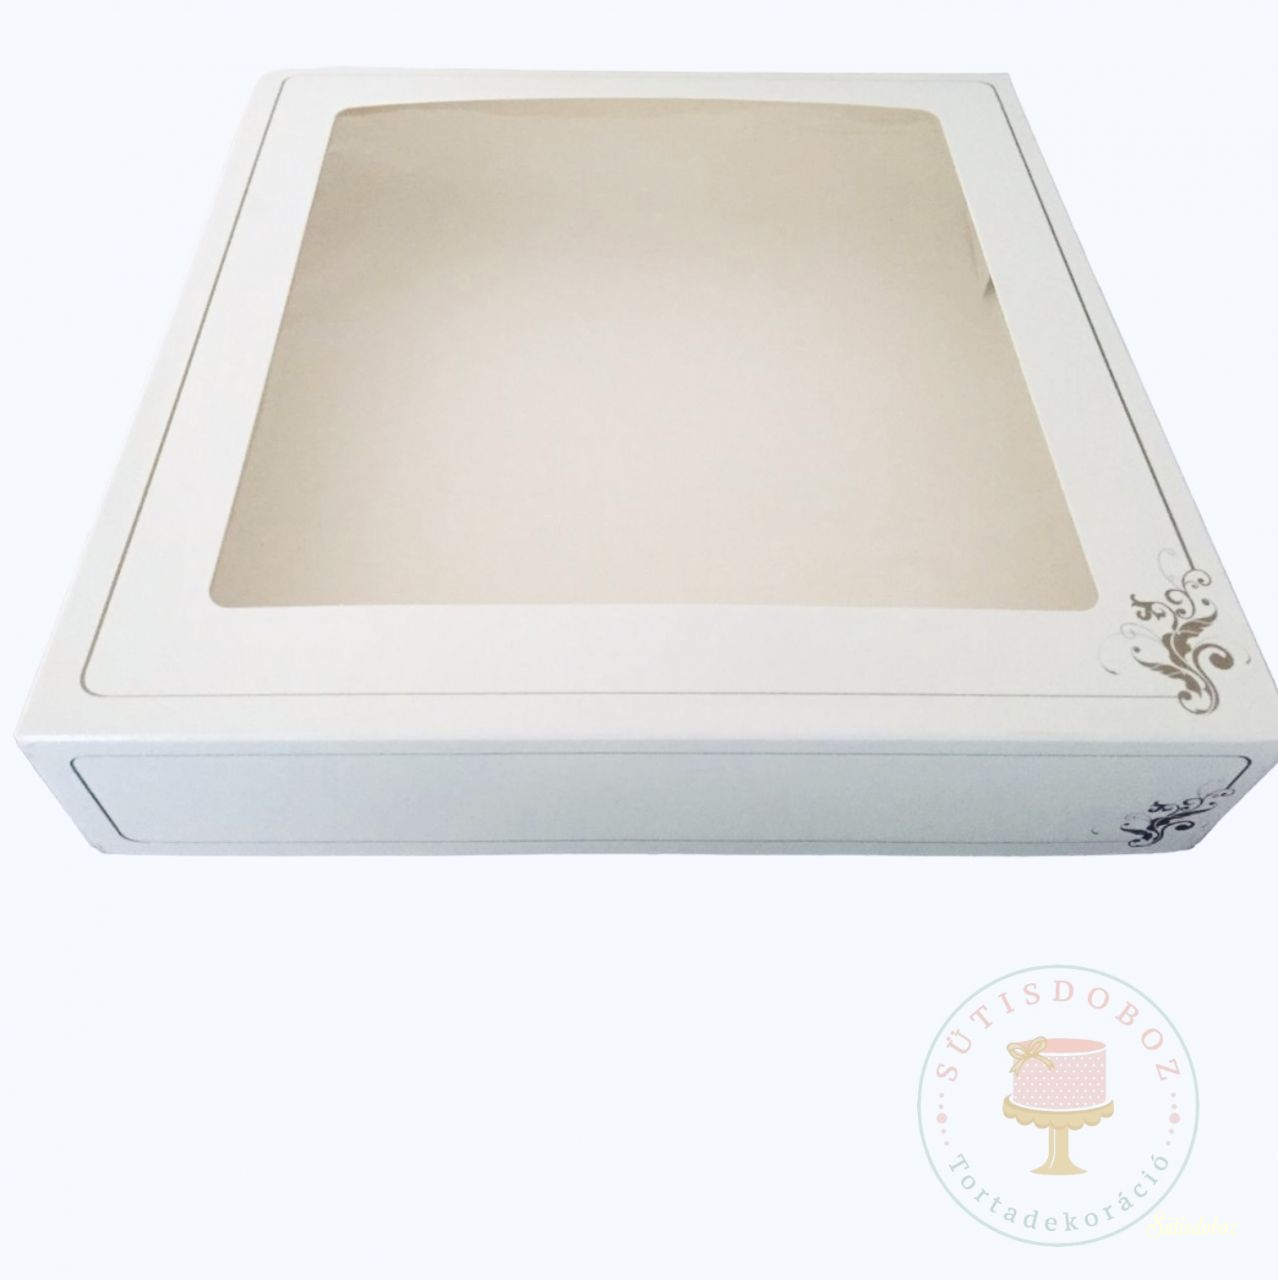 Ablakos süteményes doboz 25x25x5cm 1db (Online rendelhető minimum 10db!)